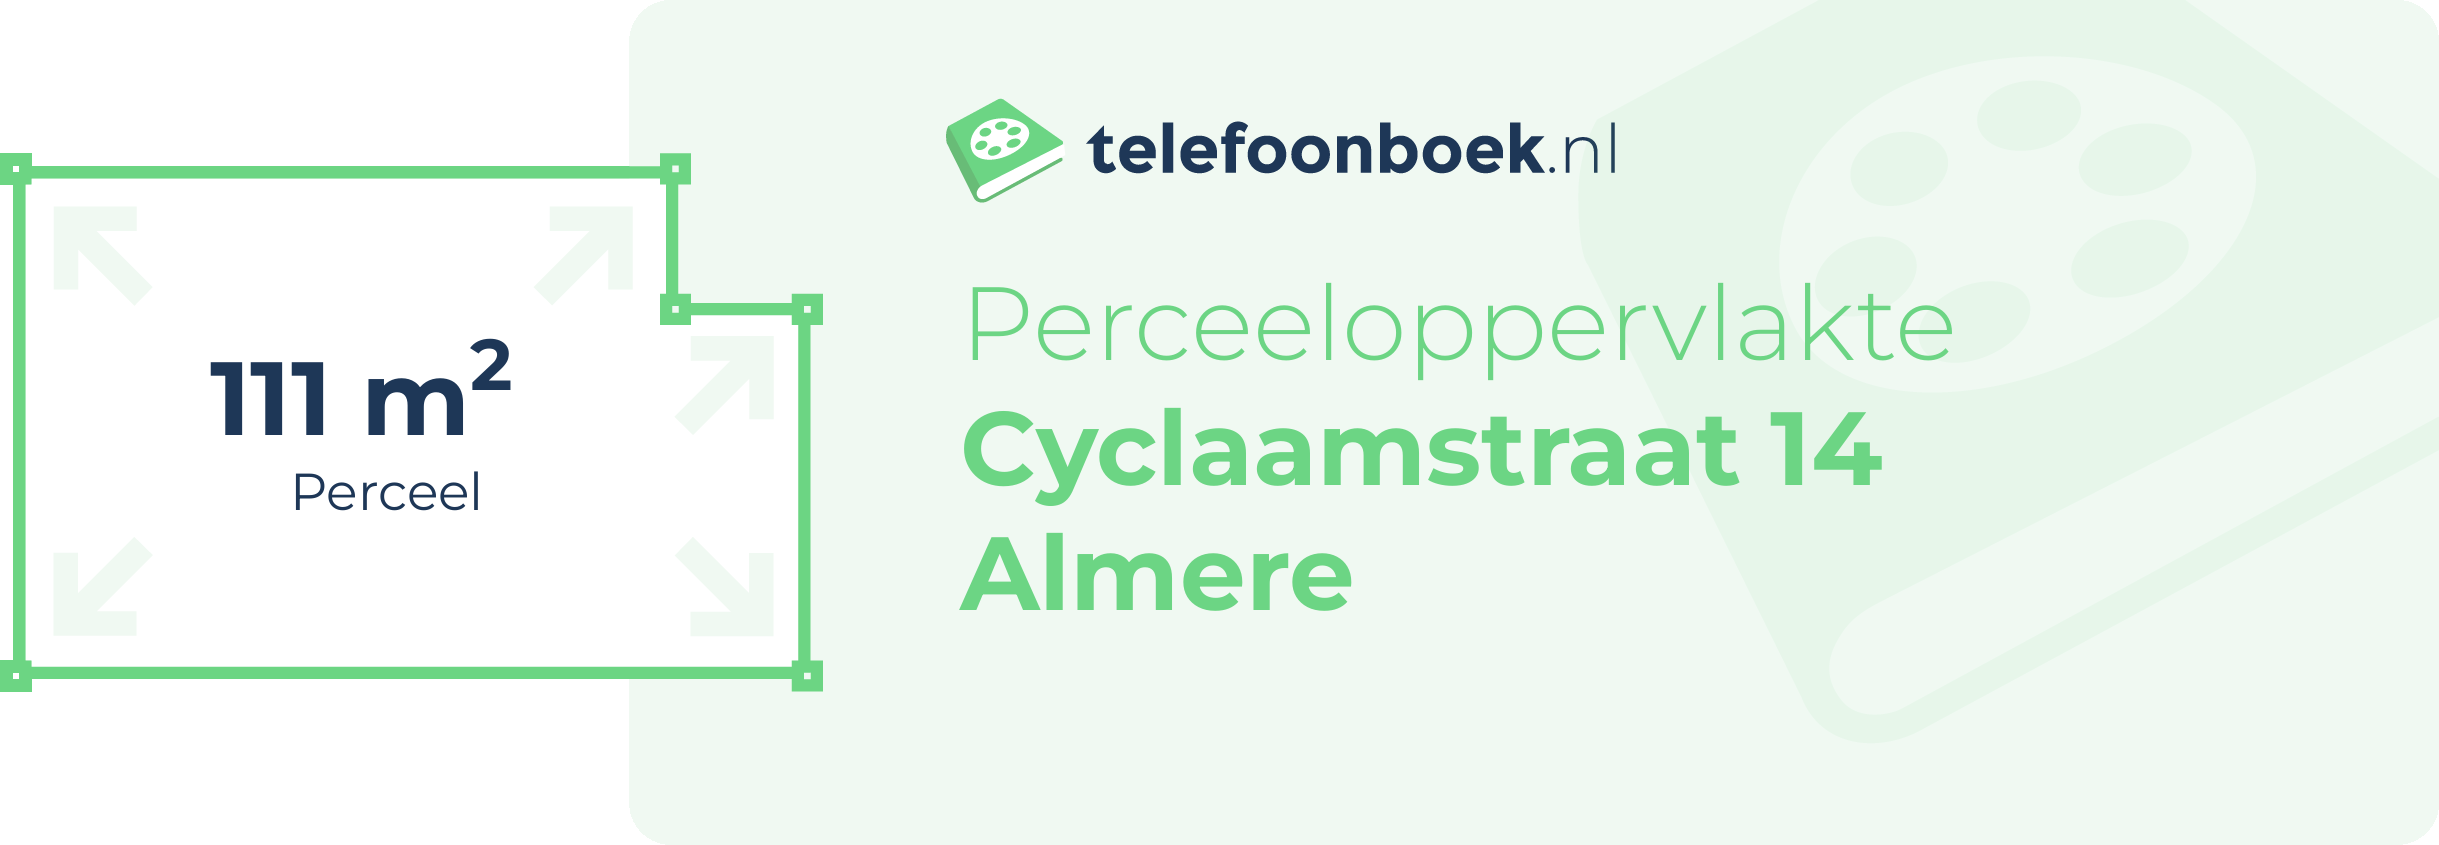 Perceeloppervlakte Cyclaamstraat 14 Almere